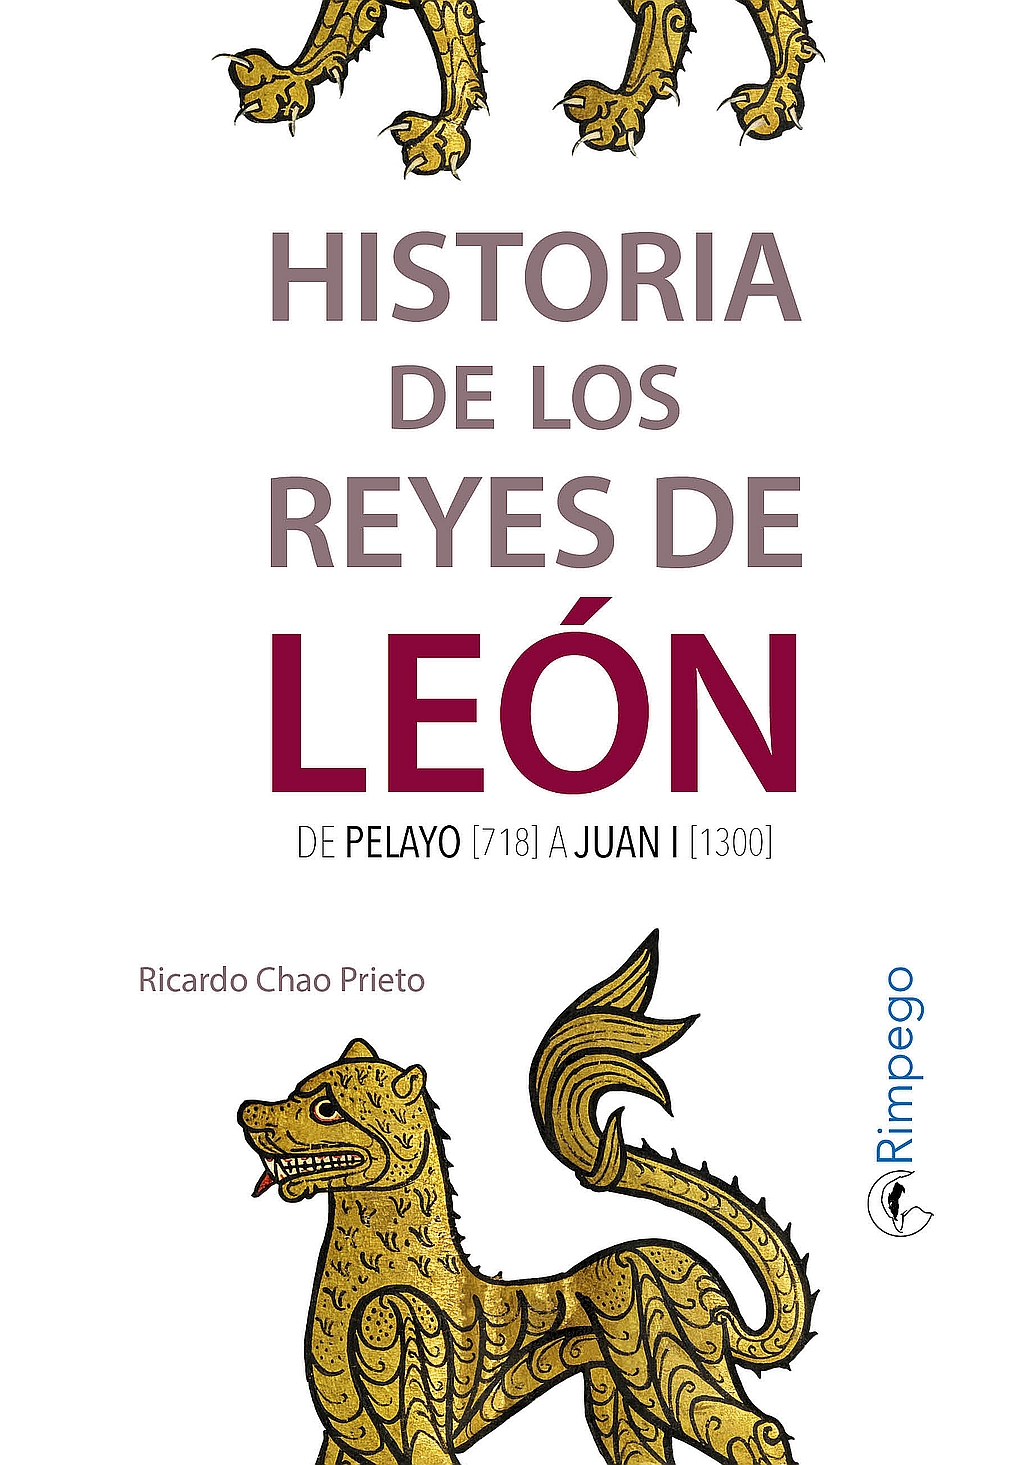 Un libro recoge la "Historia de los reyes de León"